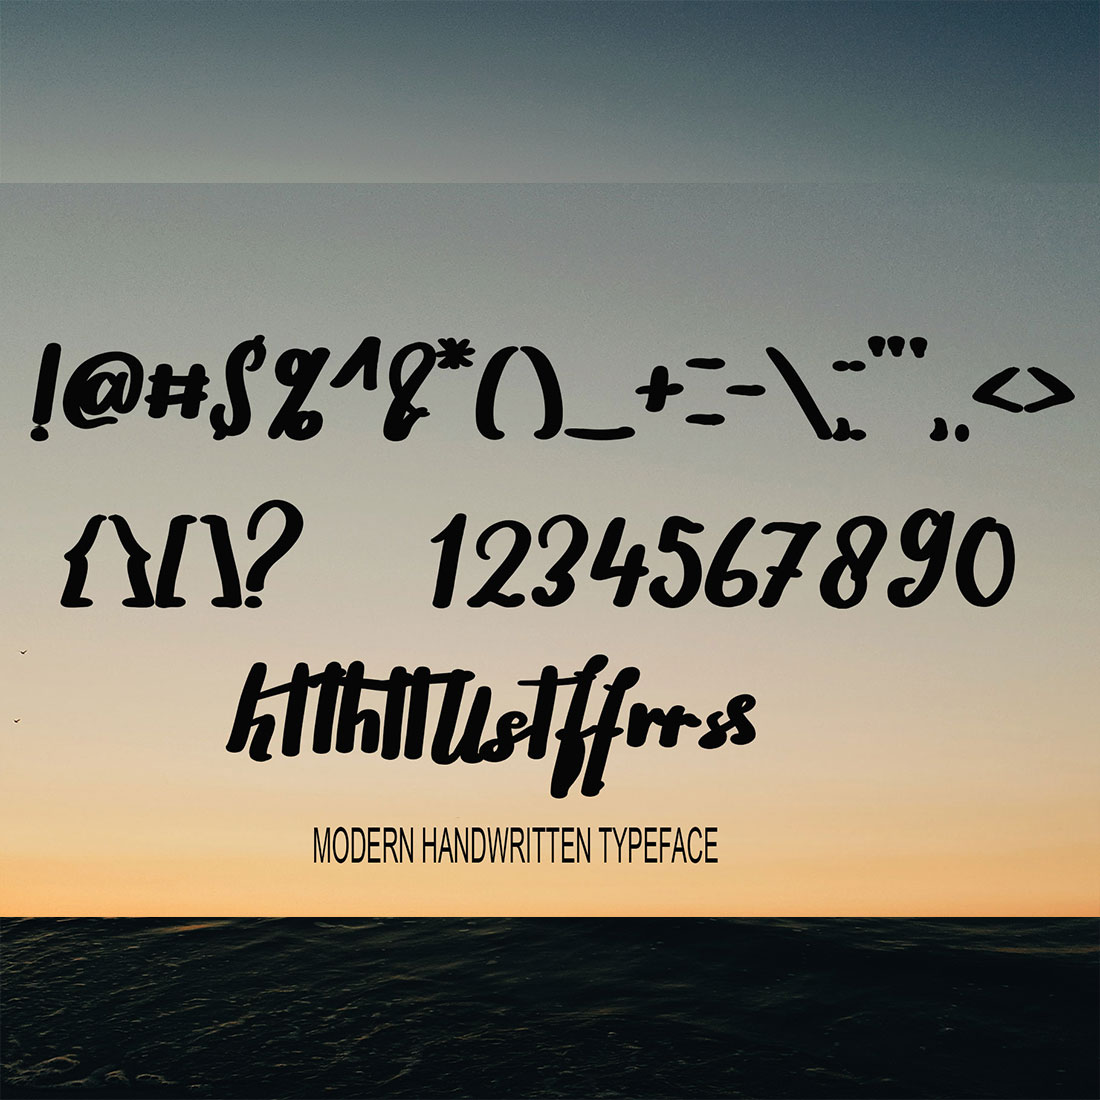 Giyattigo Signature Fontpunctuation and numbers preview.